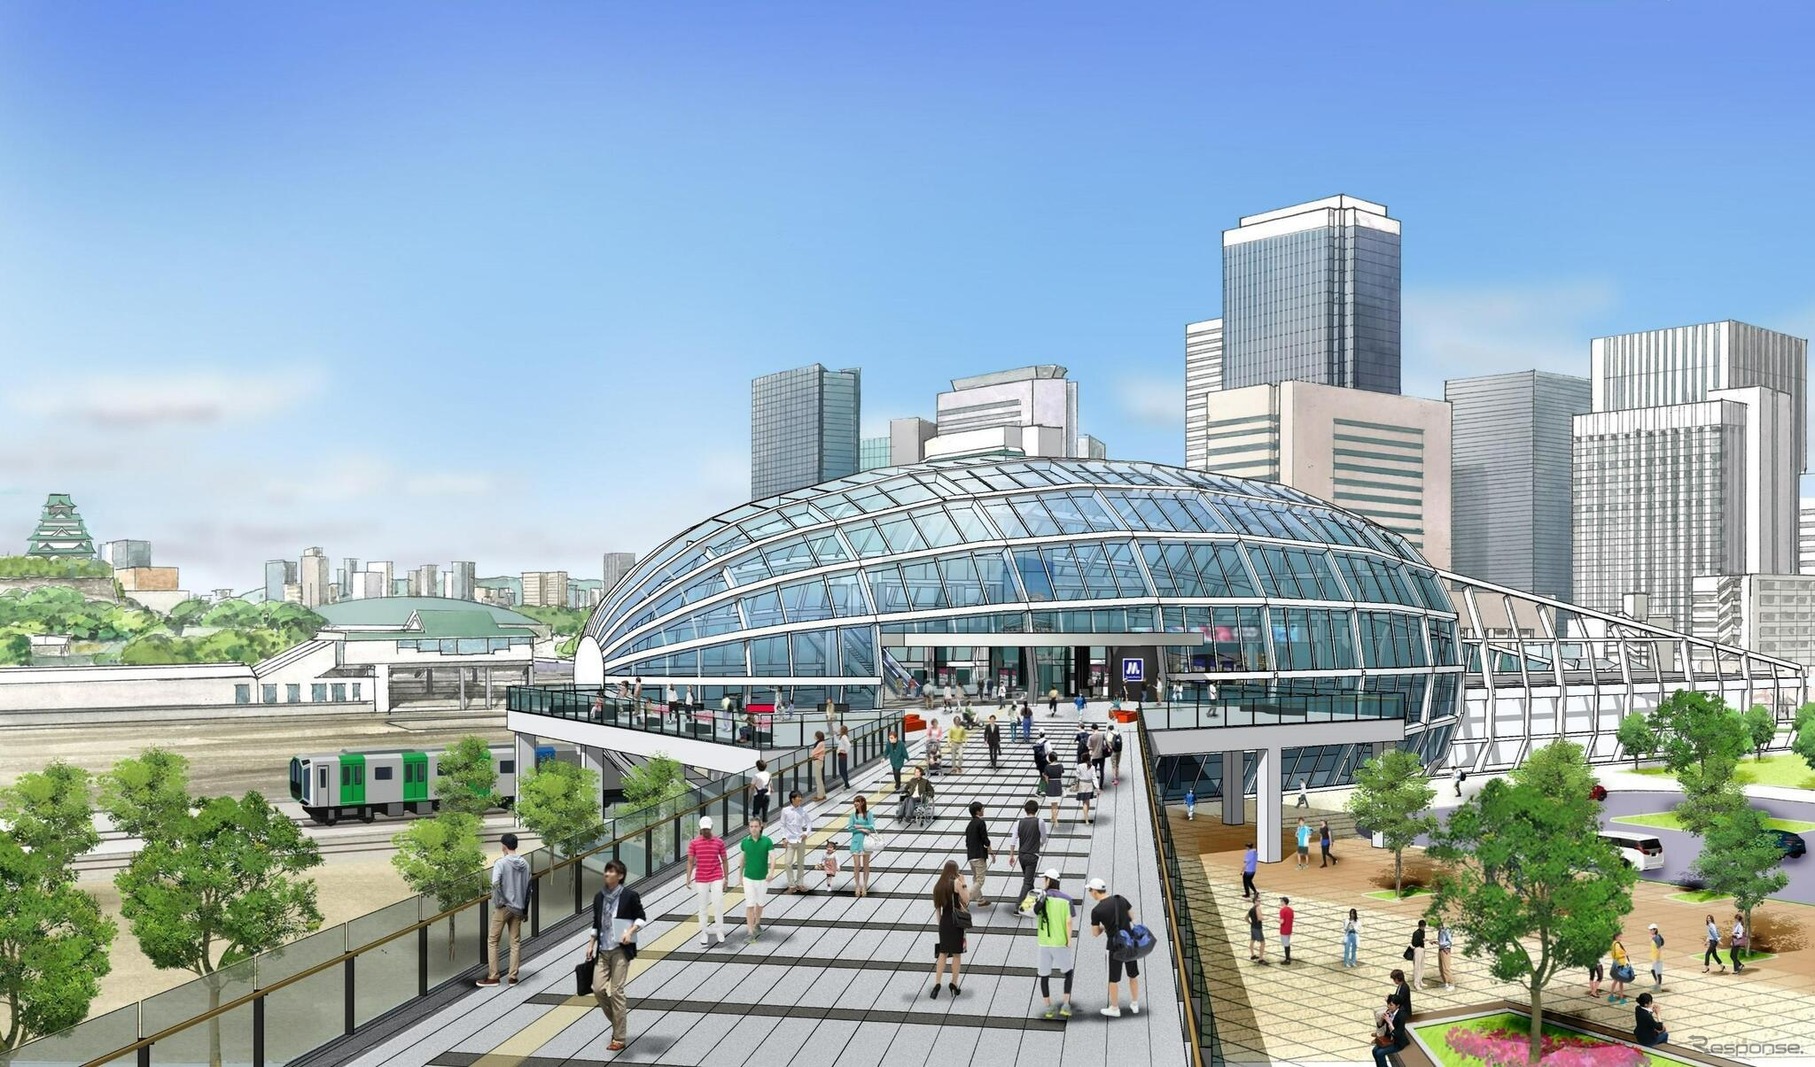 「大阪城東部地区のまちづくりのコンセプトと合致し、西の拠点と対峙する『シンボリック、かつ、インテリジェンス（知）・イノベーション（革新）・インキュベーション（新規事業等の孵化）』を球体が浮かび上がってくるイメージで表す唯一無二のデザイン」とされる森之宮新駅のエクステリア。